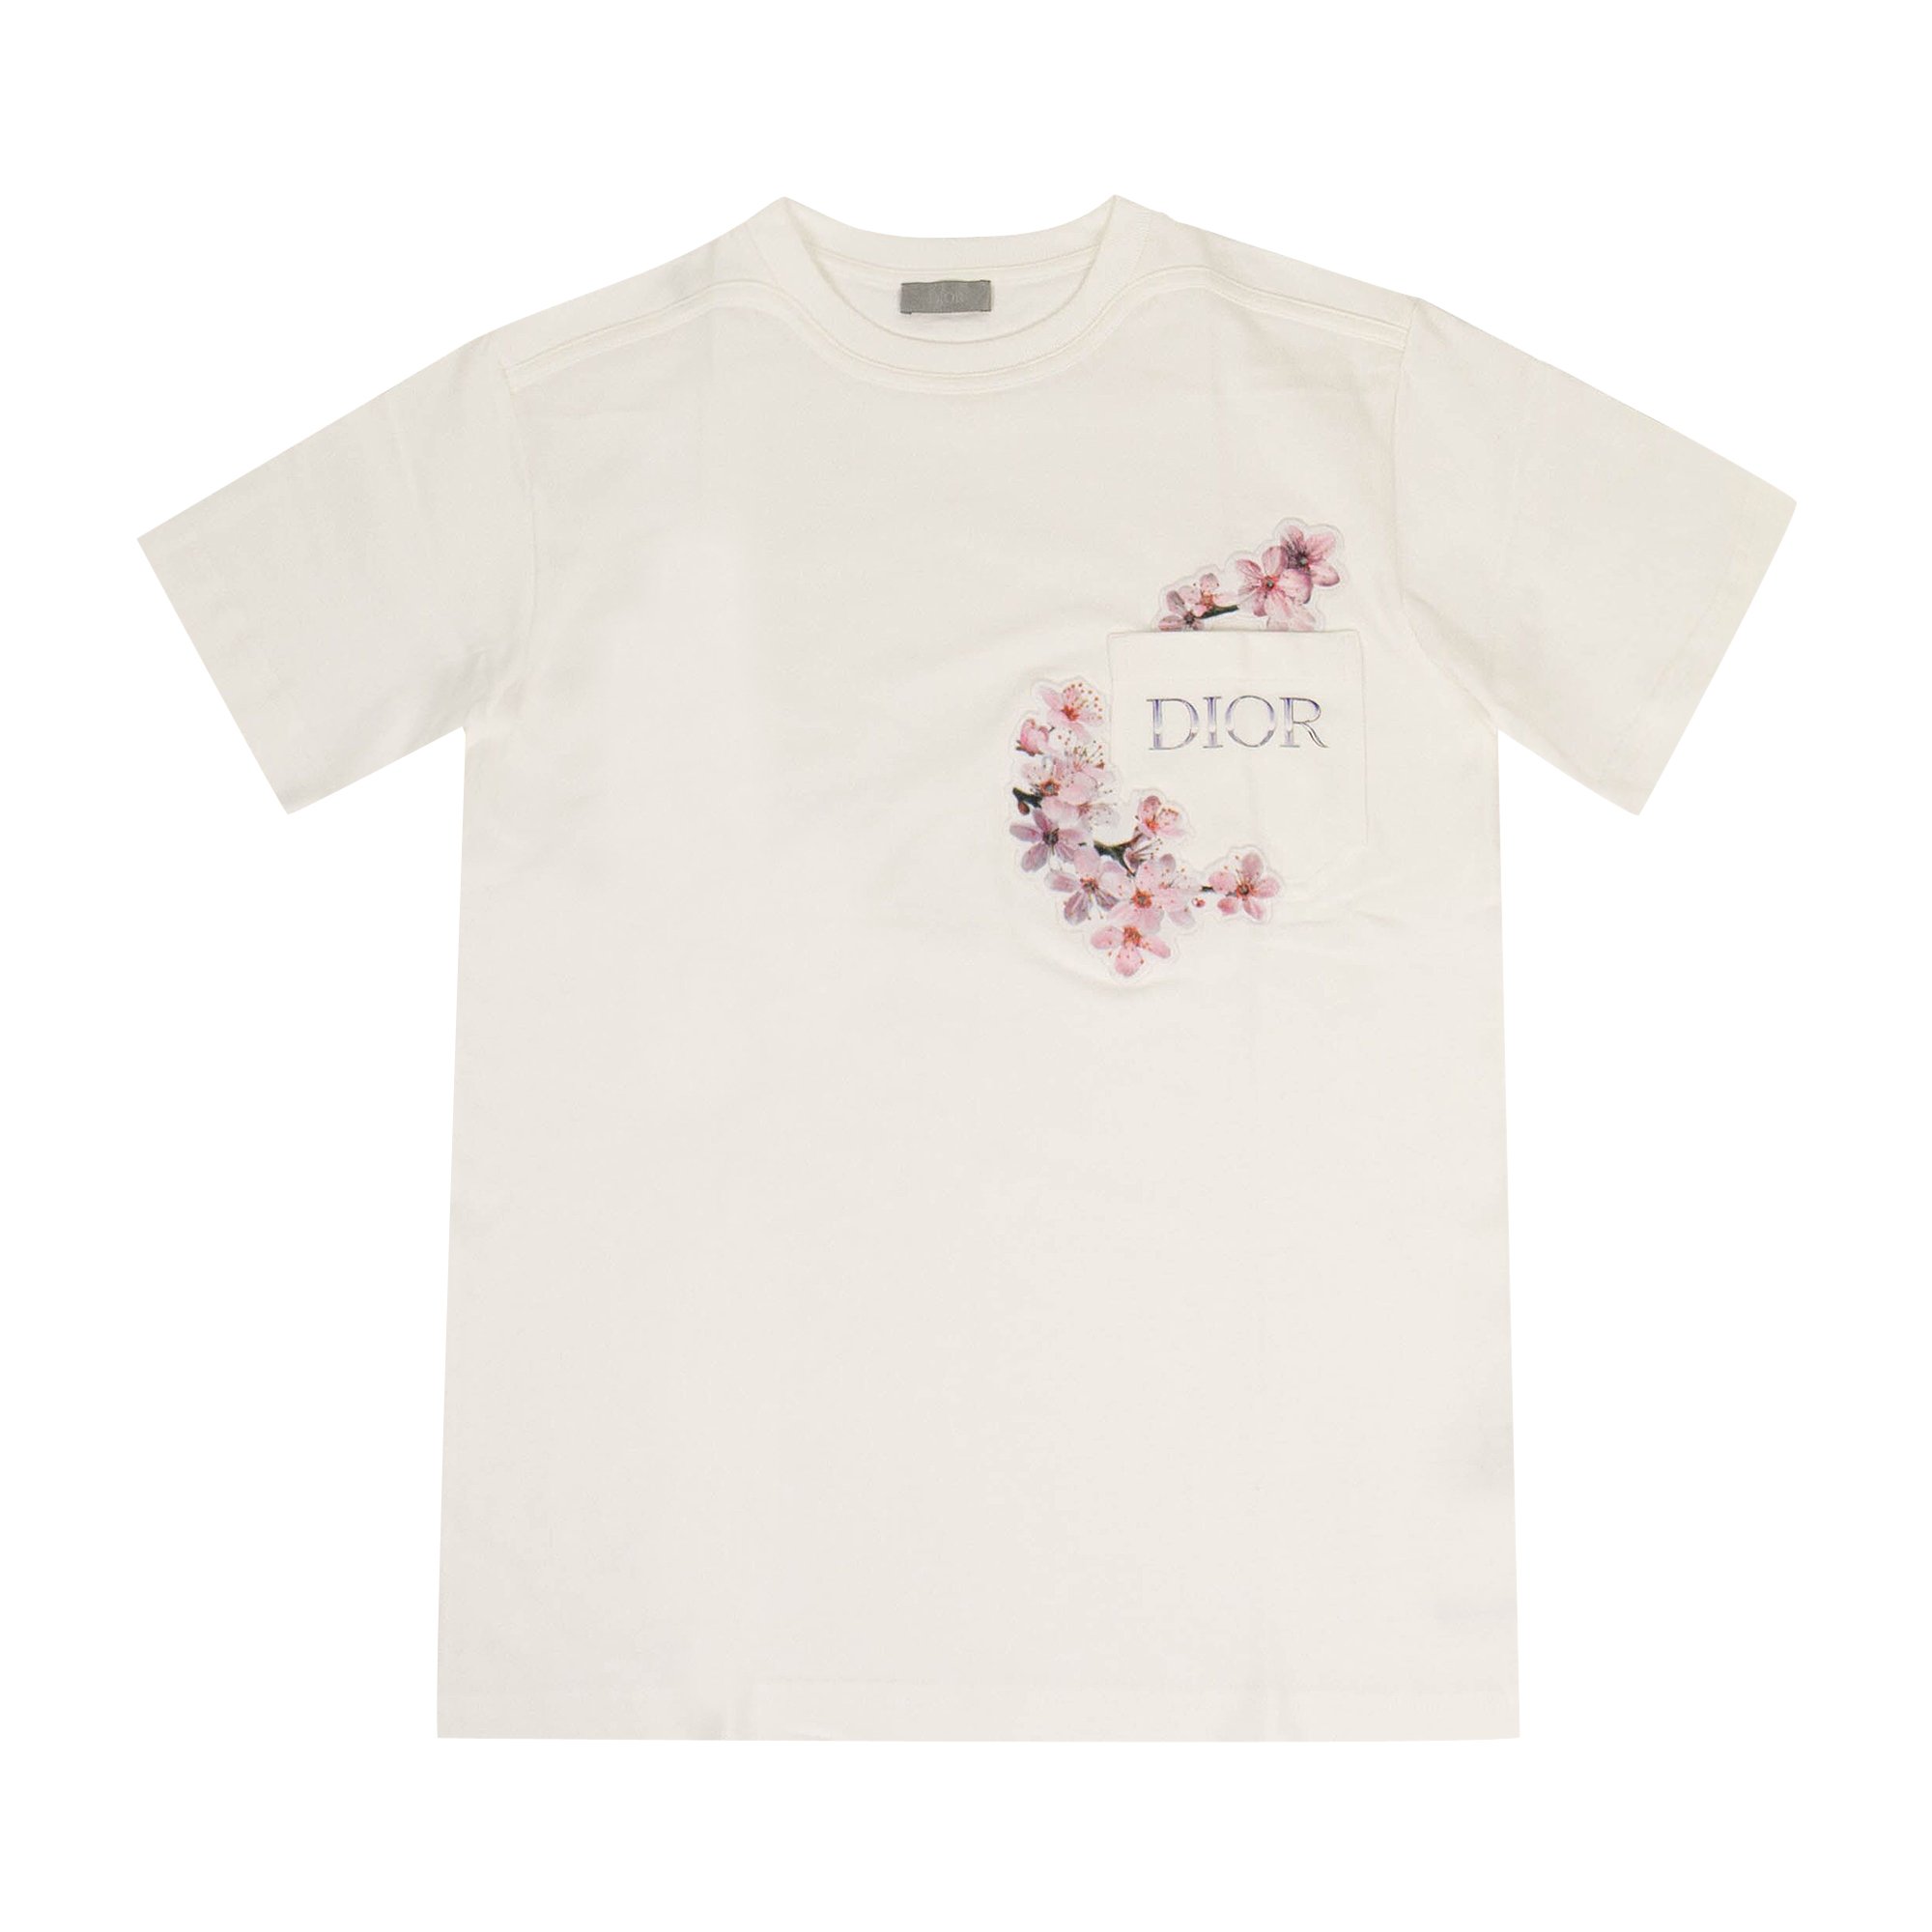 Dior x Sorayama t Shirt in BadenWürttemberg  Empfingen  eBay  Kleinanzeigen ist jetzt Kleinanzeigen